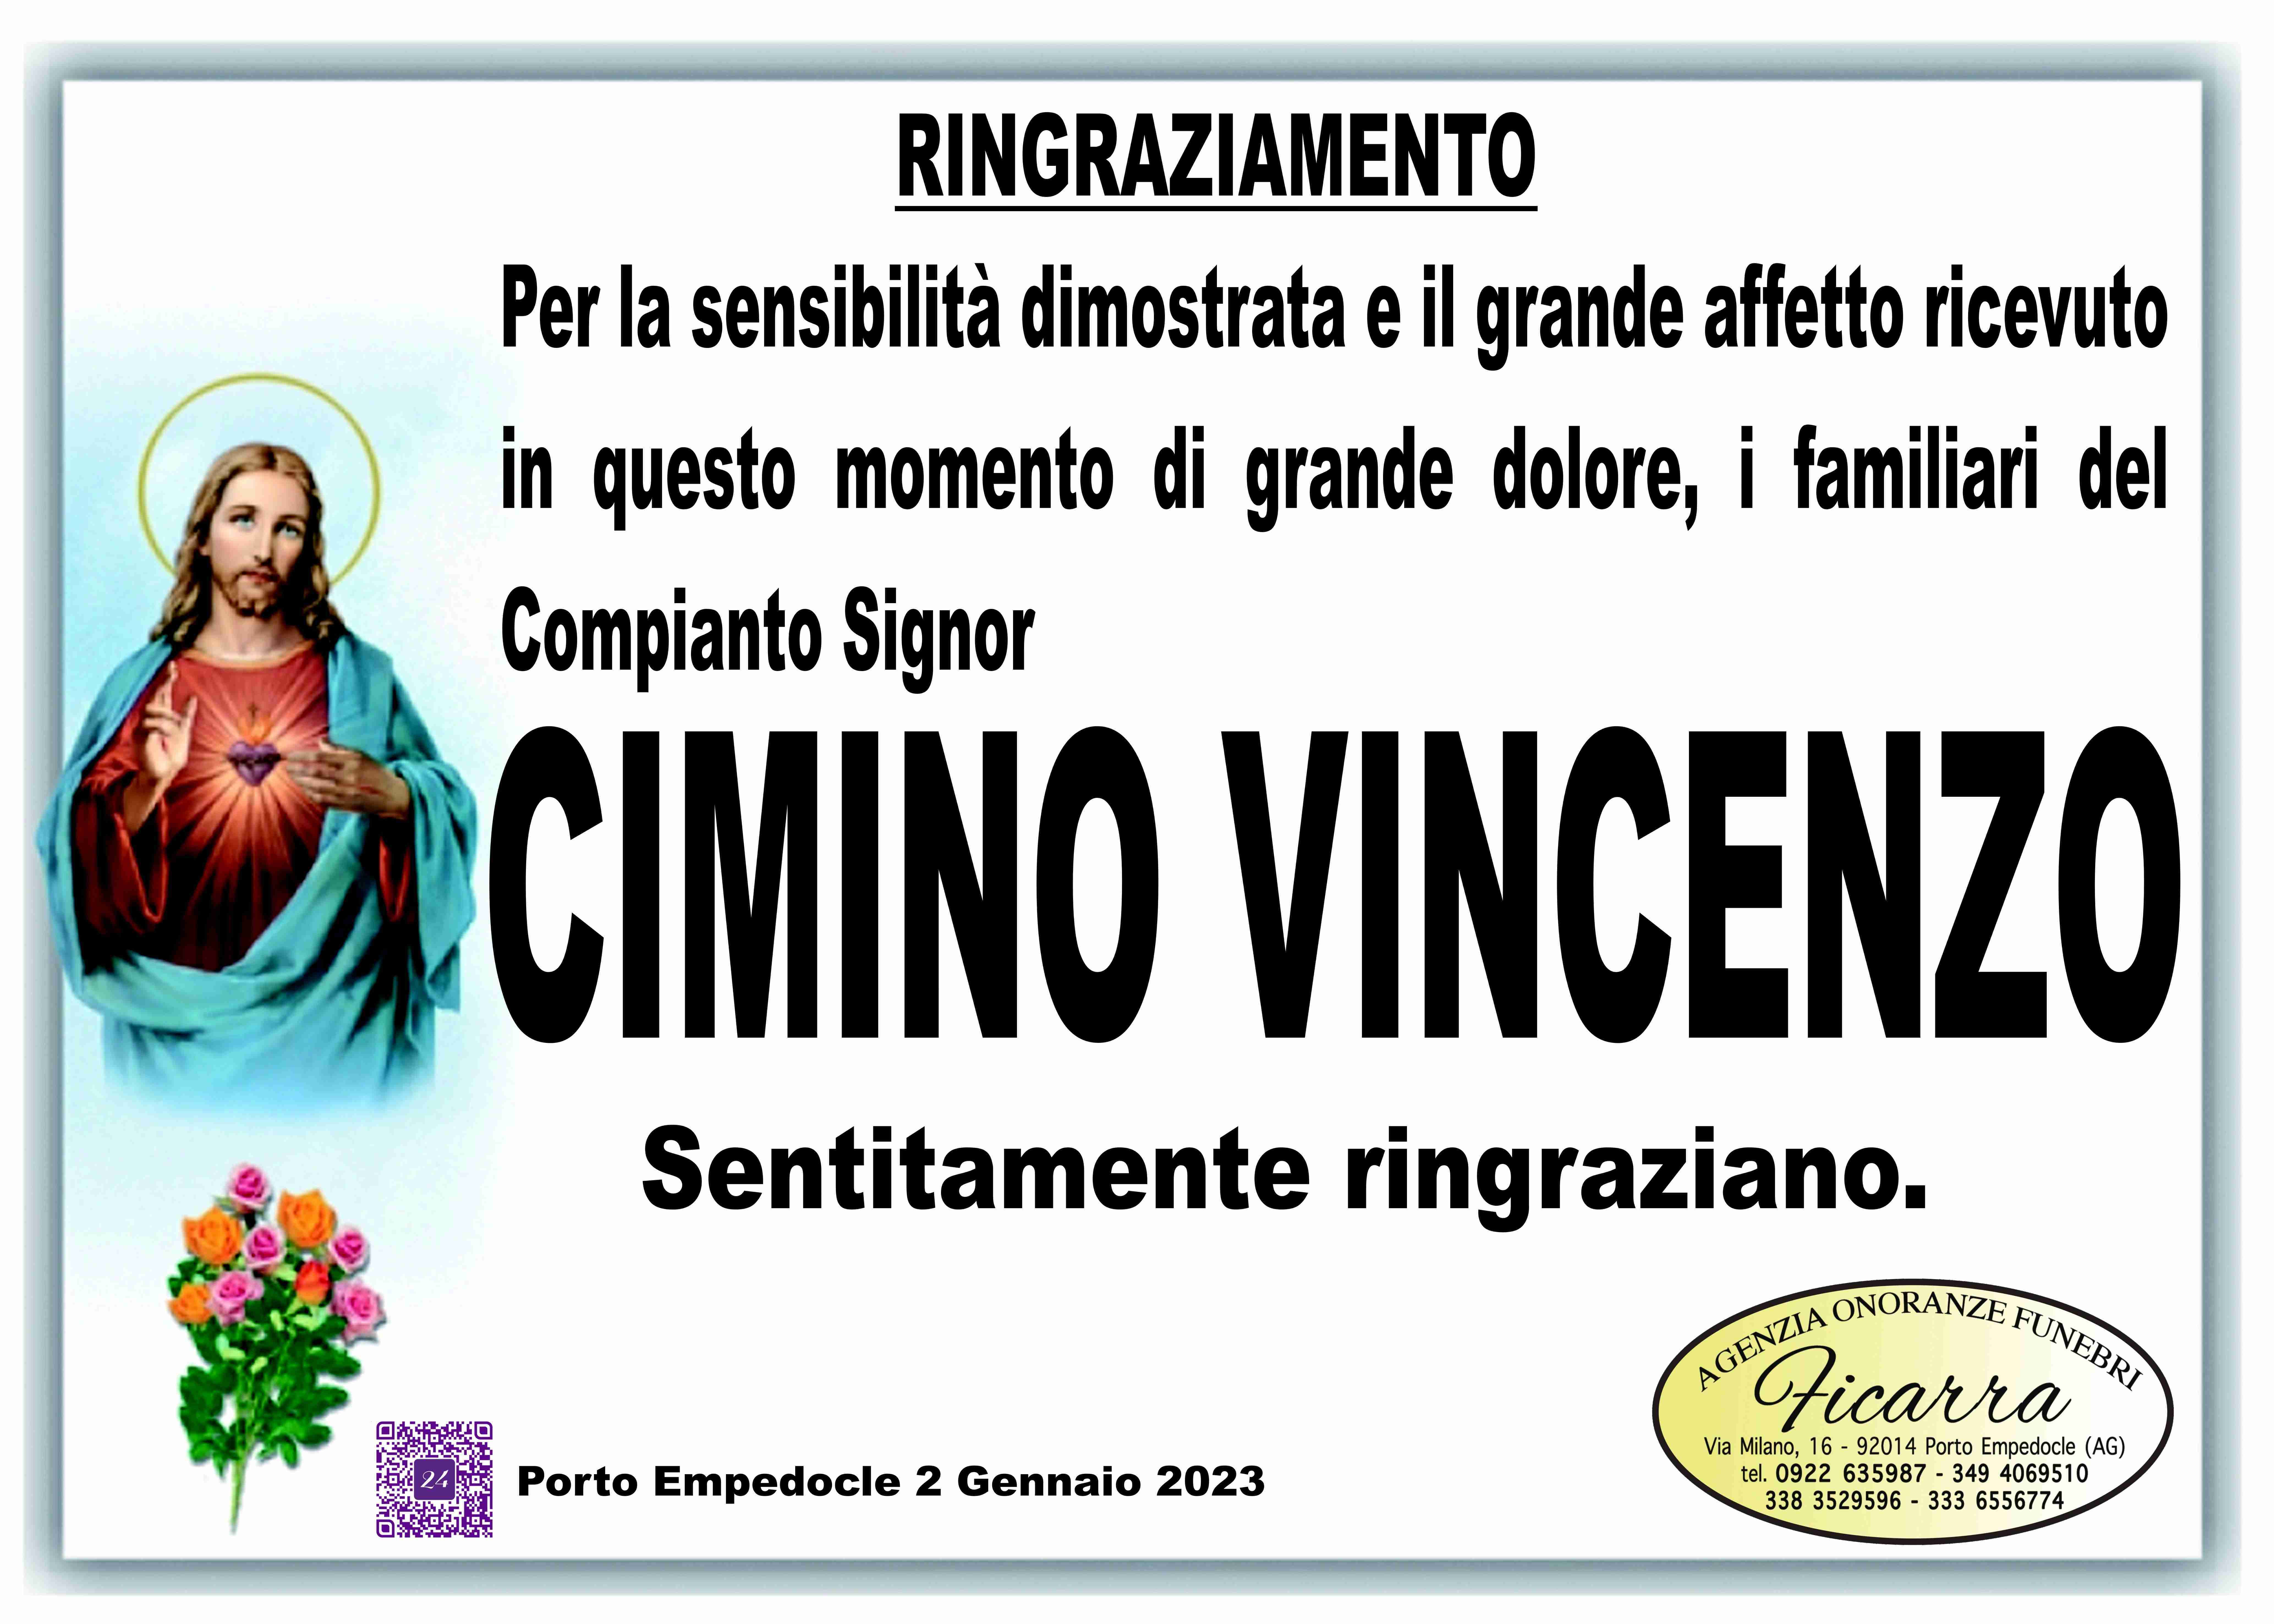 Vincenzo Cimino